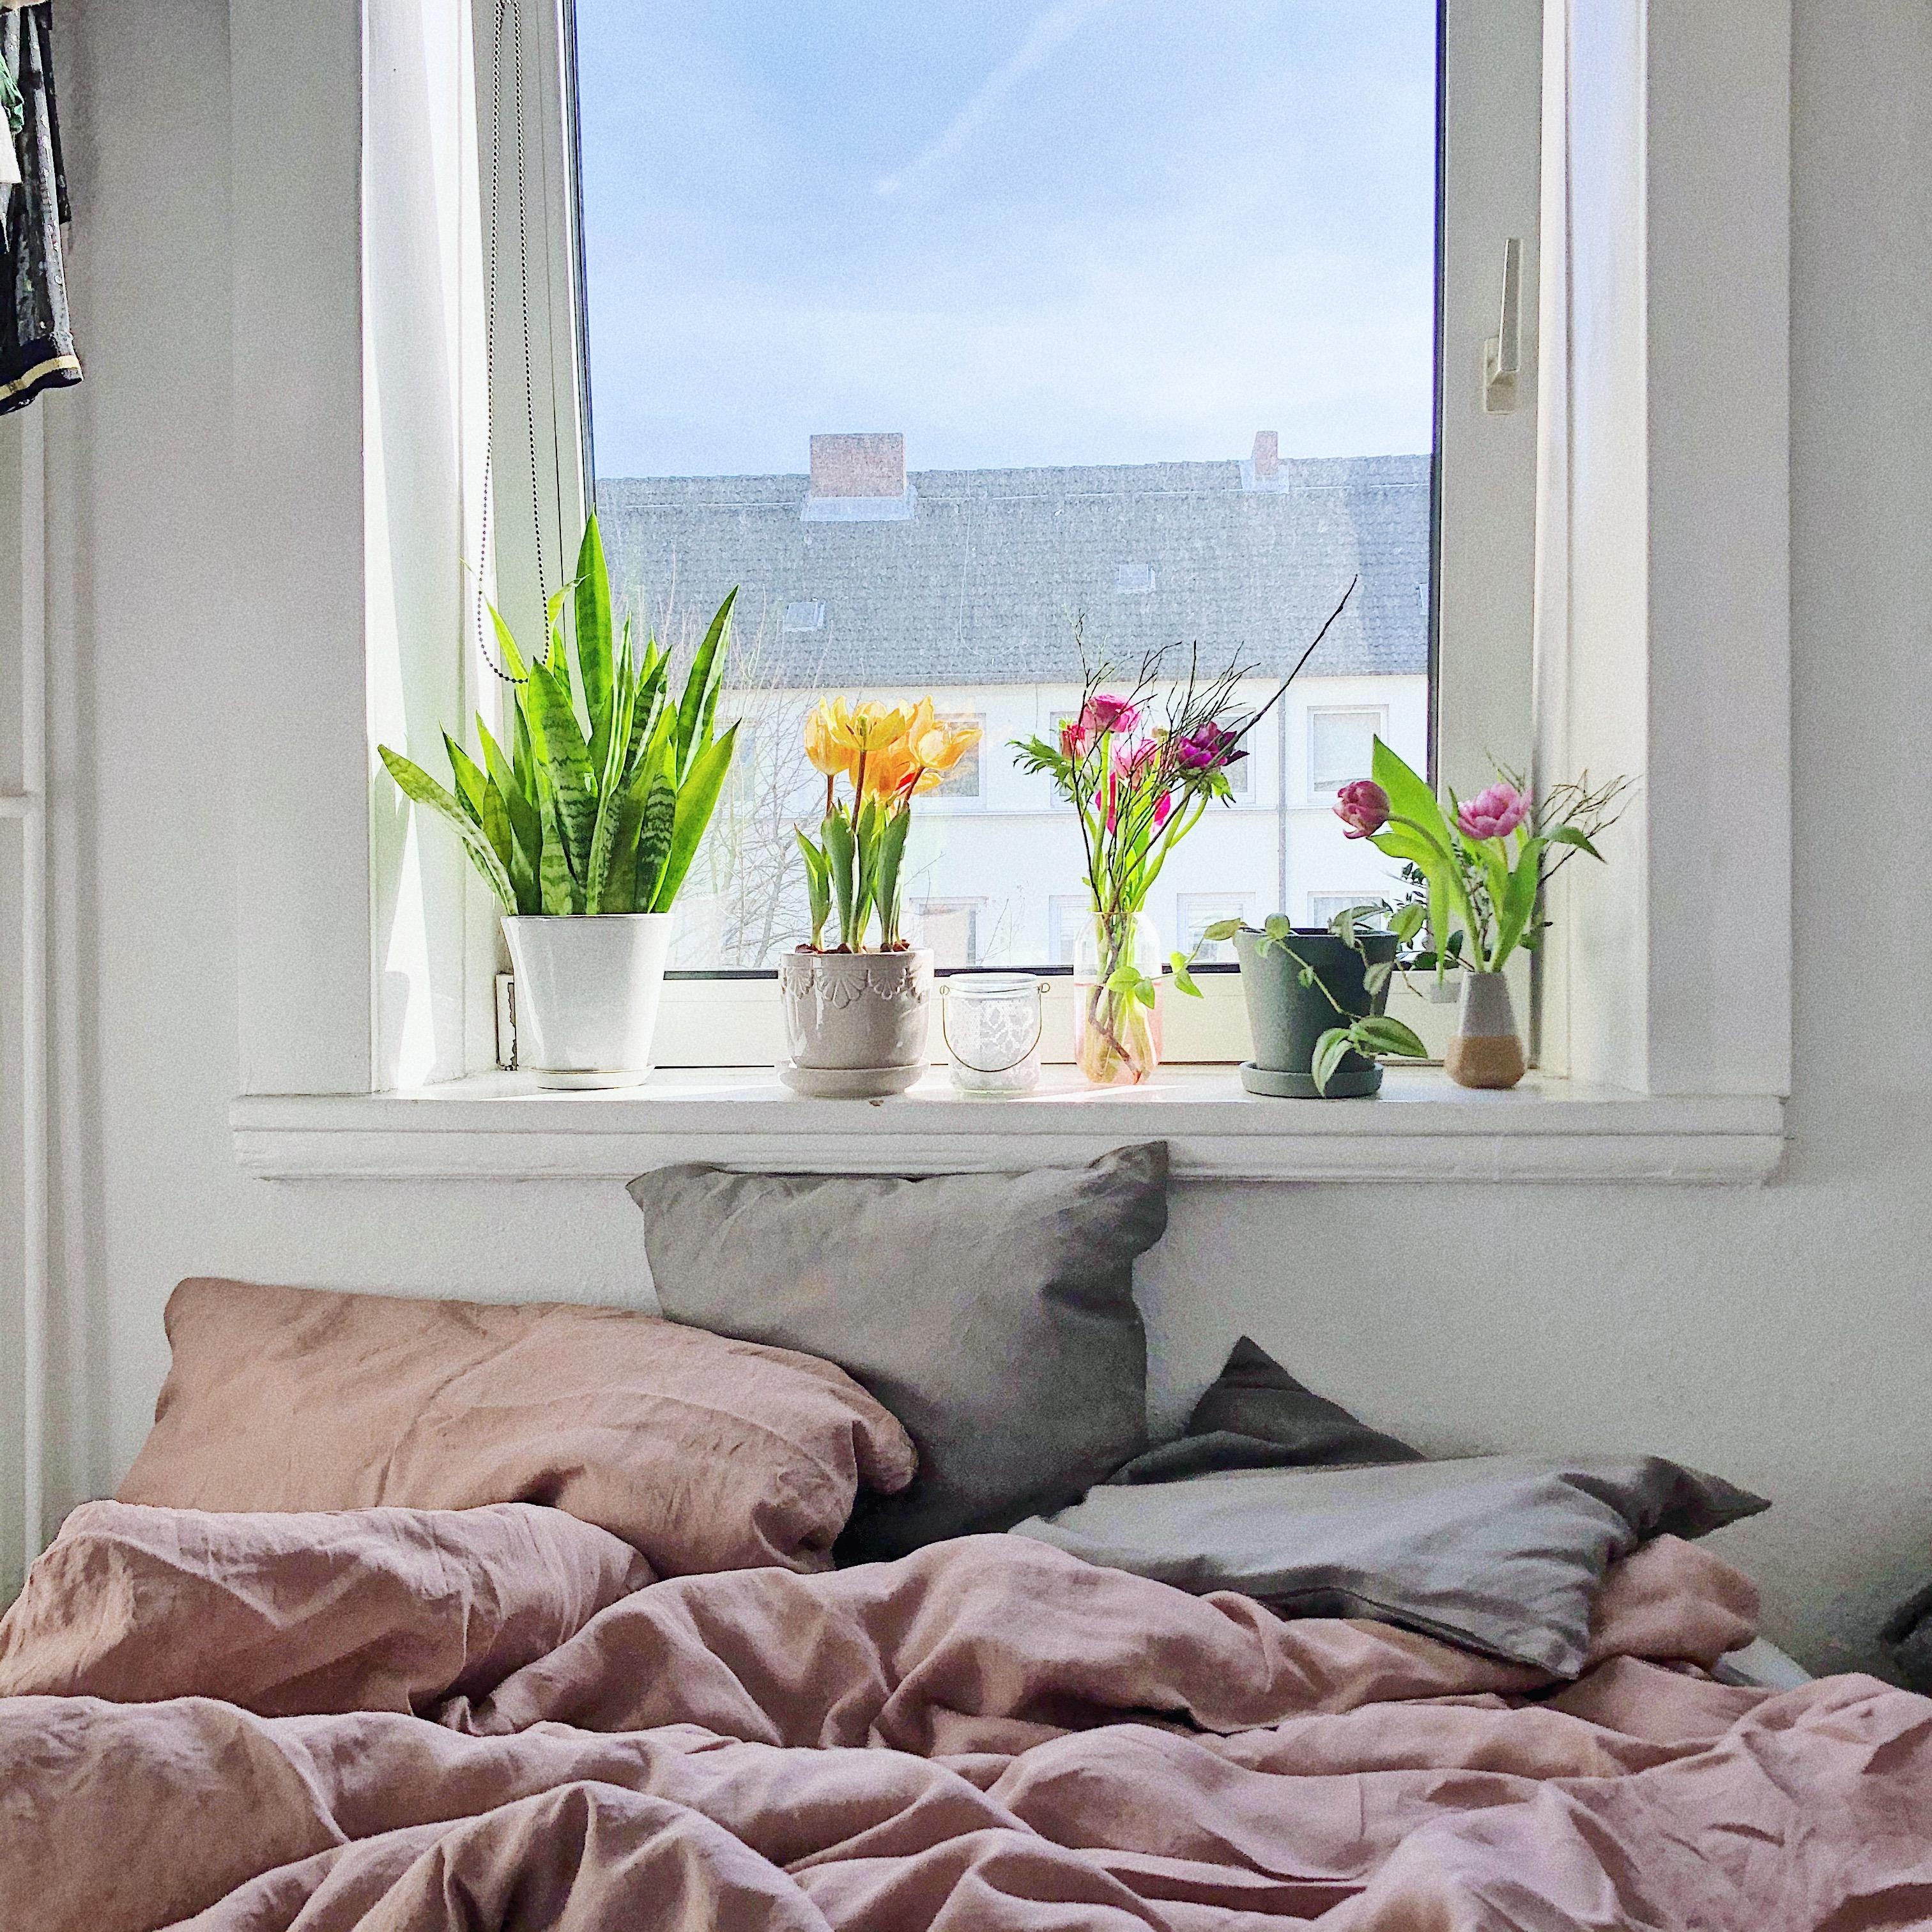 Ganz guter Platz würd ich sagen... 
#Schlafzimmer #Bett #Altbau #Blumen